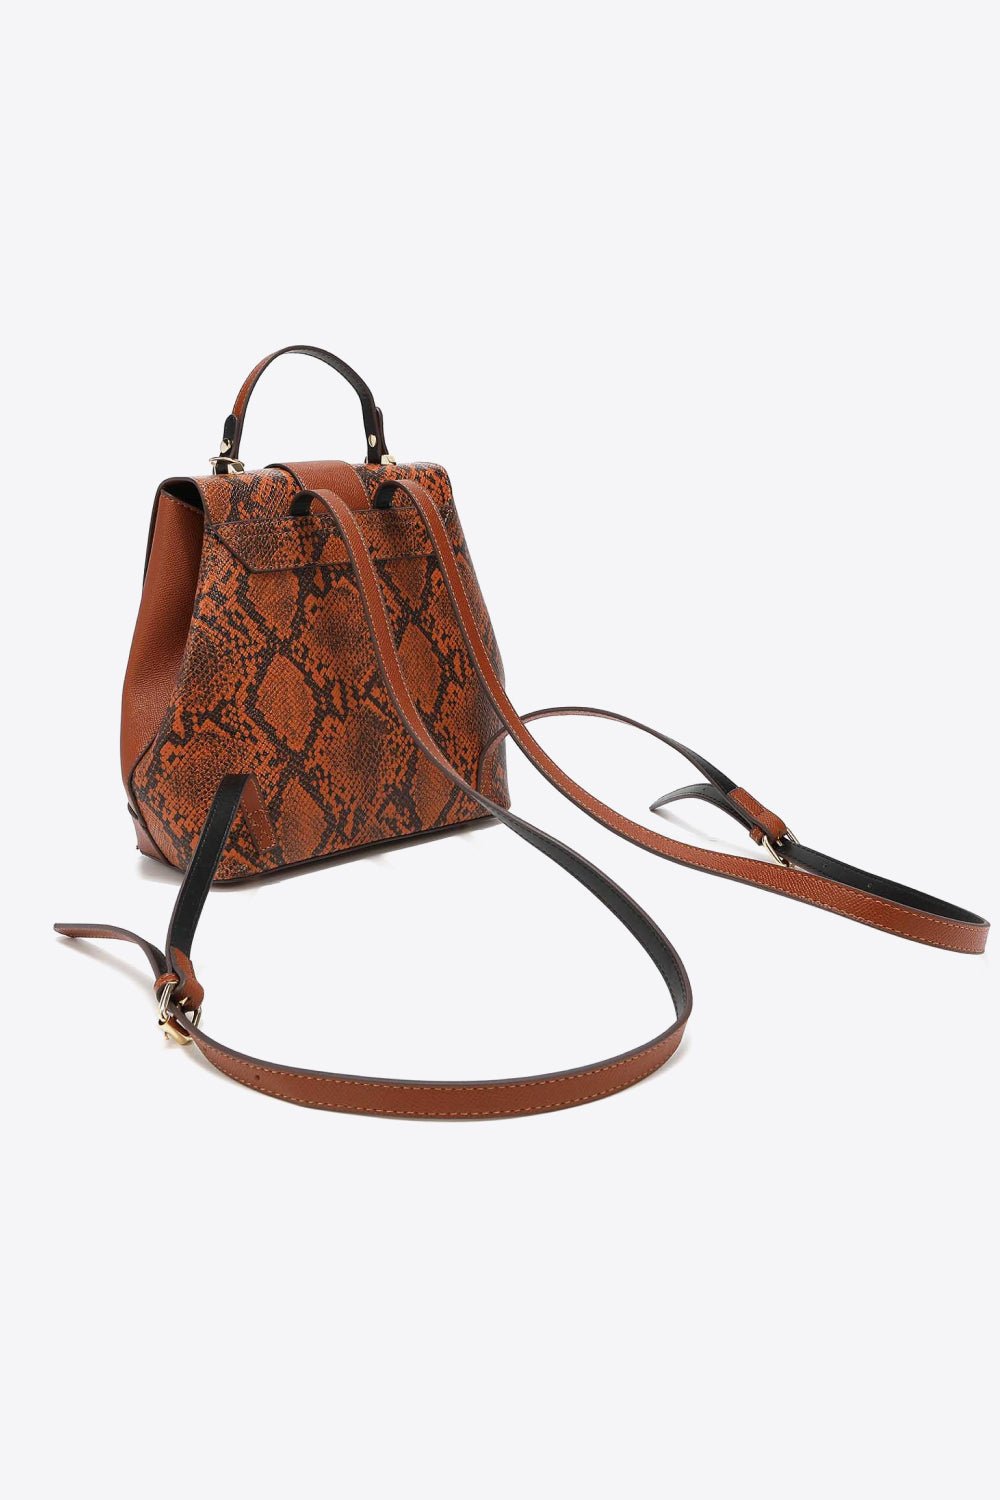 Python Print Vegan Leather 3-Piece Hand Bag SetHandbag SetNicole Lee USA